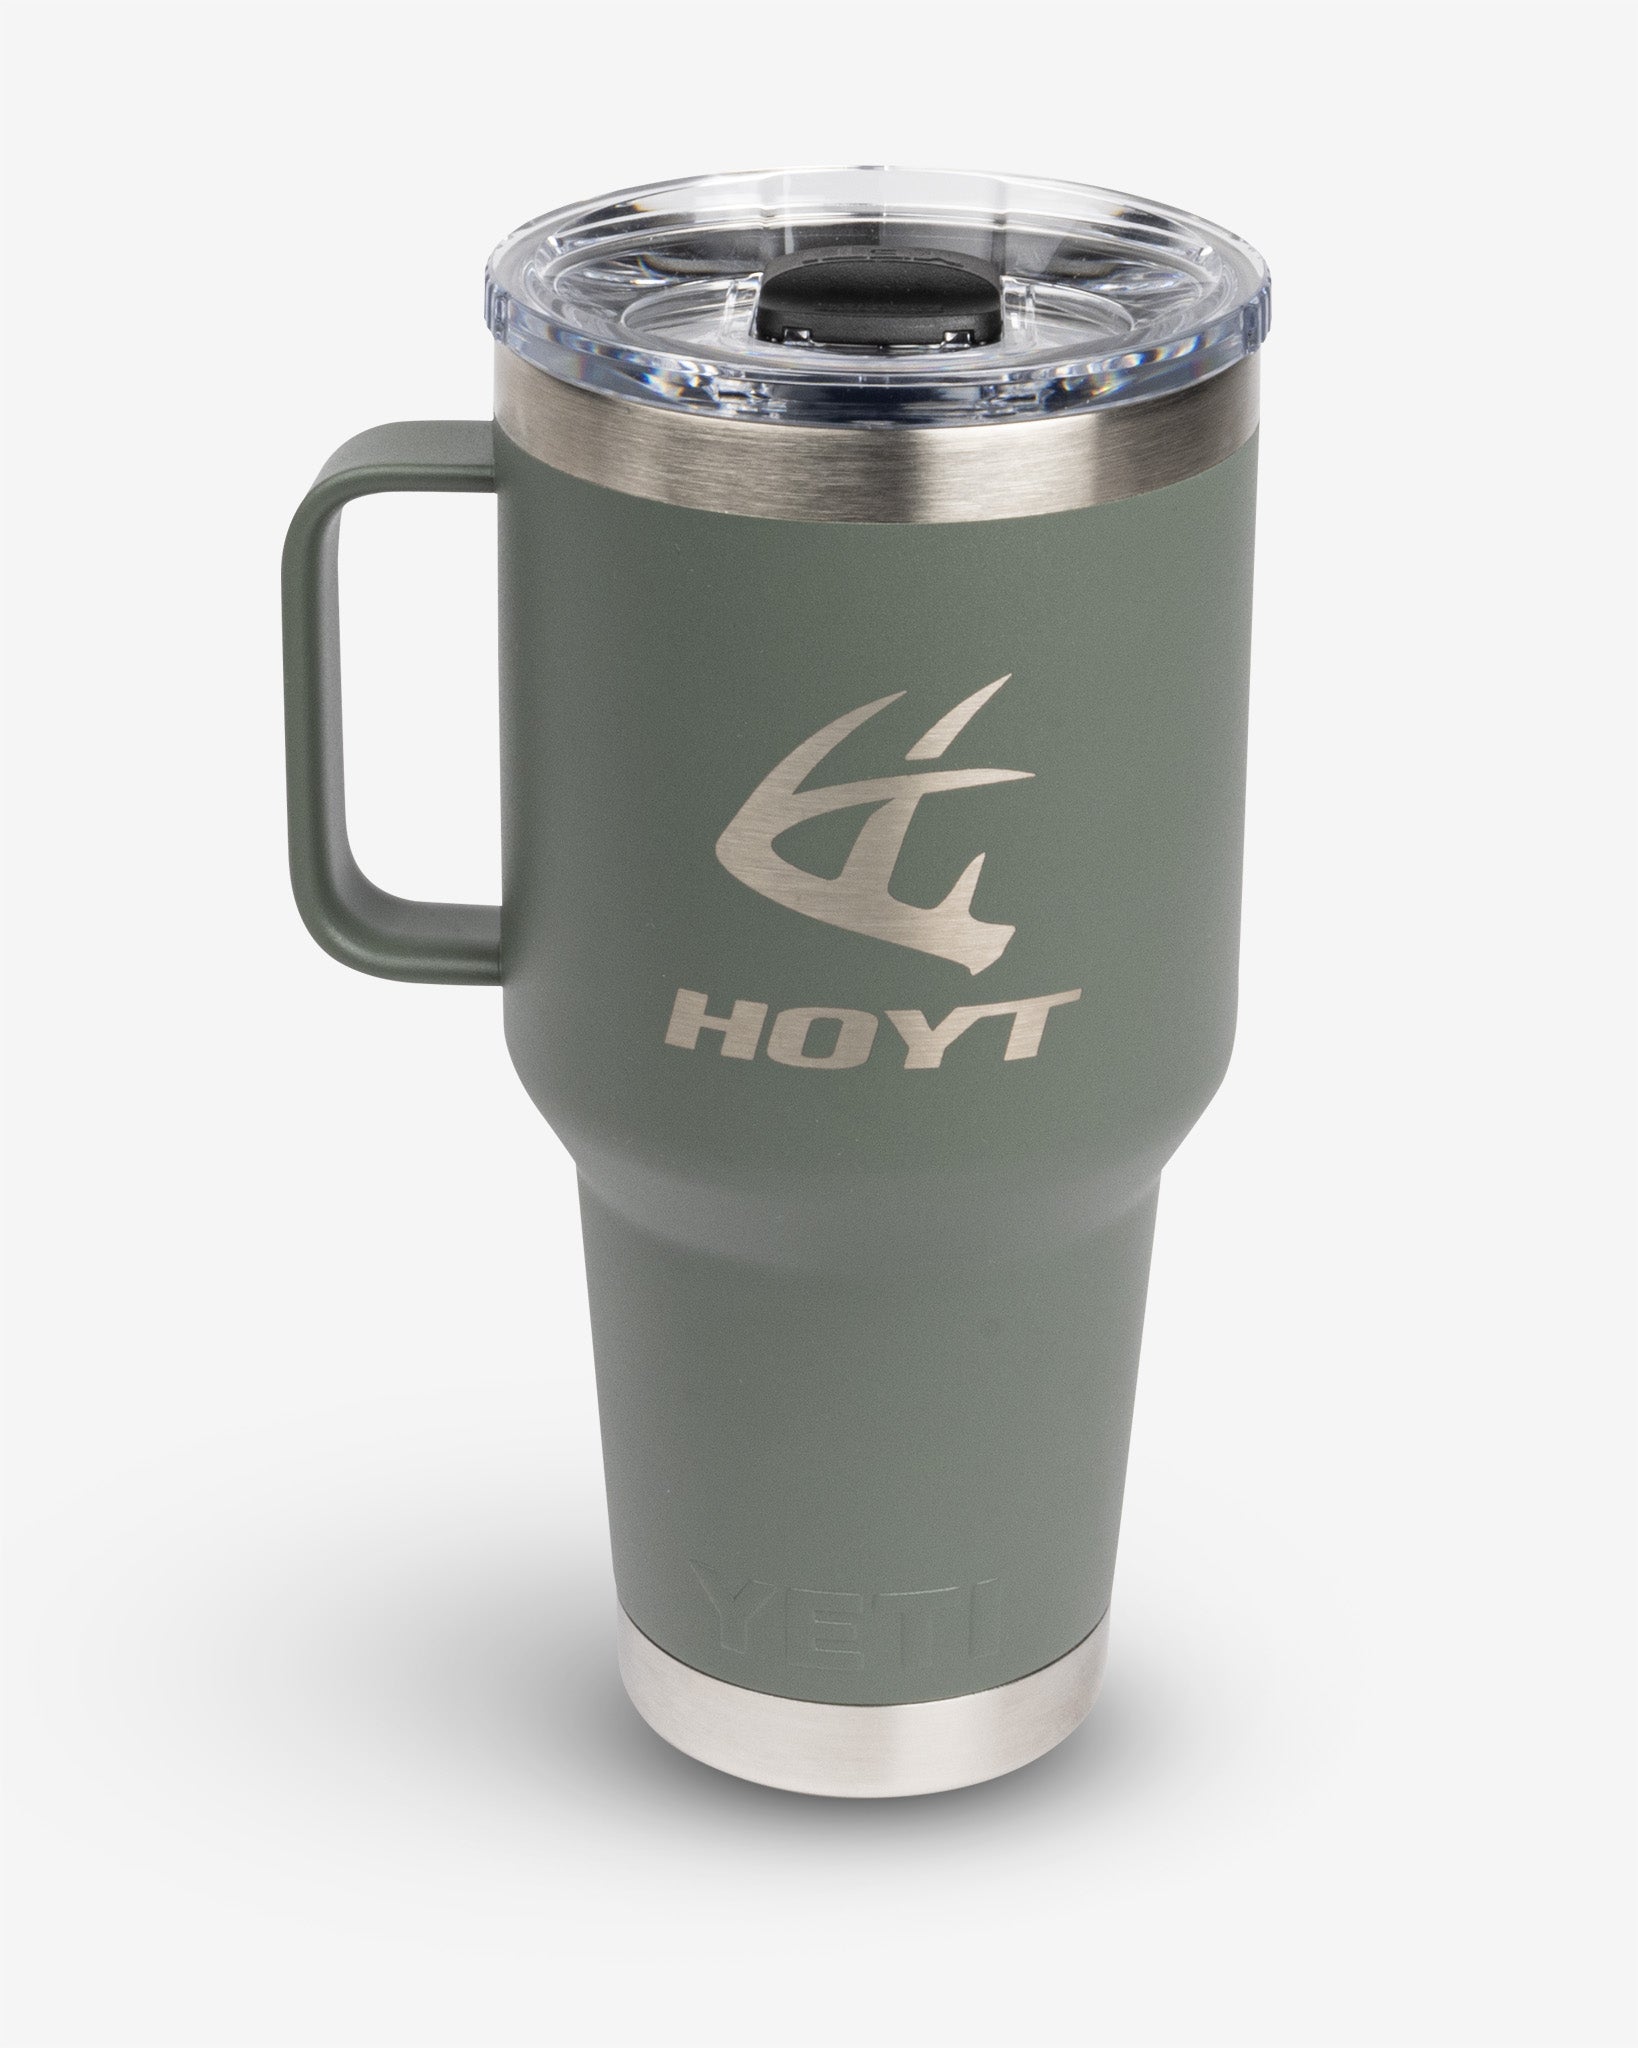 Yeti Hoyt Travel Mug w/ Stronghold Lid - Camp Green